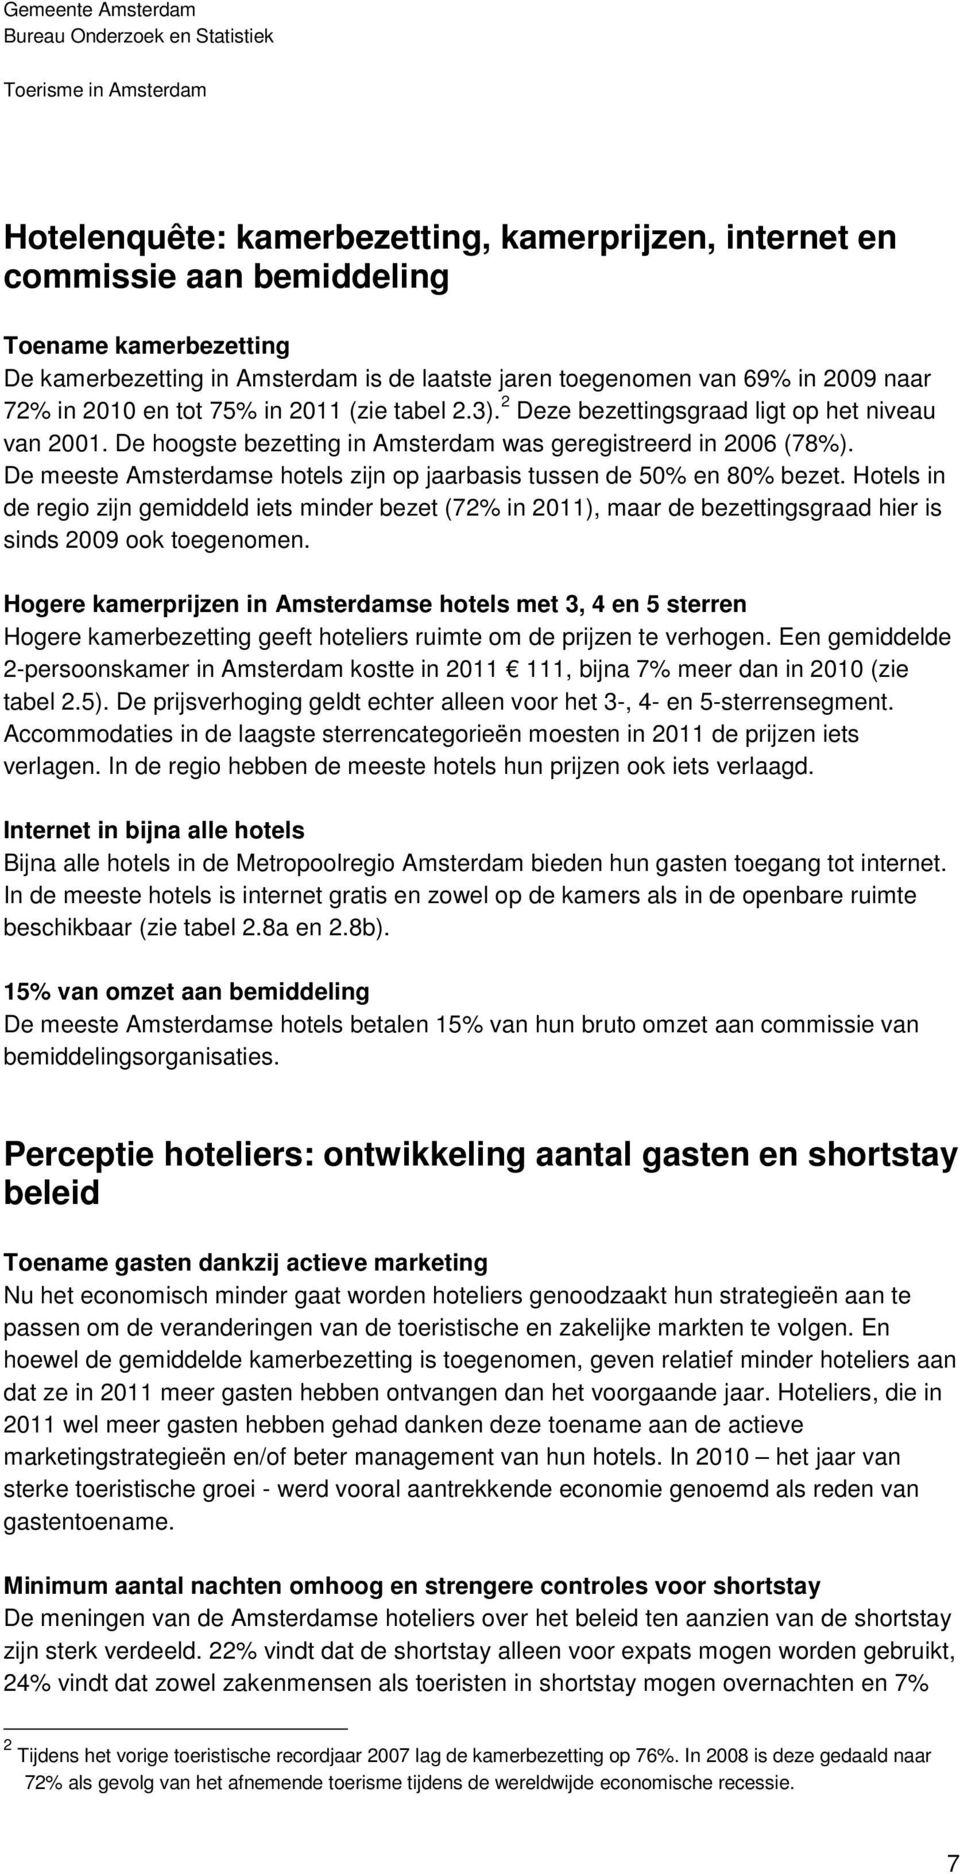 De meeste Amsterdamse hotels zijn op jaarbasis tussen de 50% en 80% bezet. Hotels in de regio zijn gemiddeld iets minder bezet (72% in 2011), maar de bezettingsgraad hier is sinds 2009 ook toegenomen.